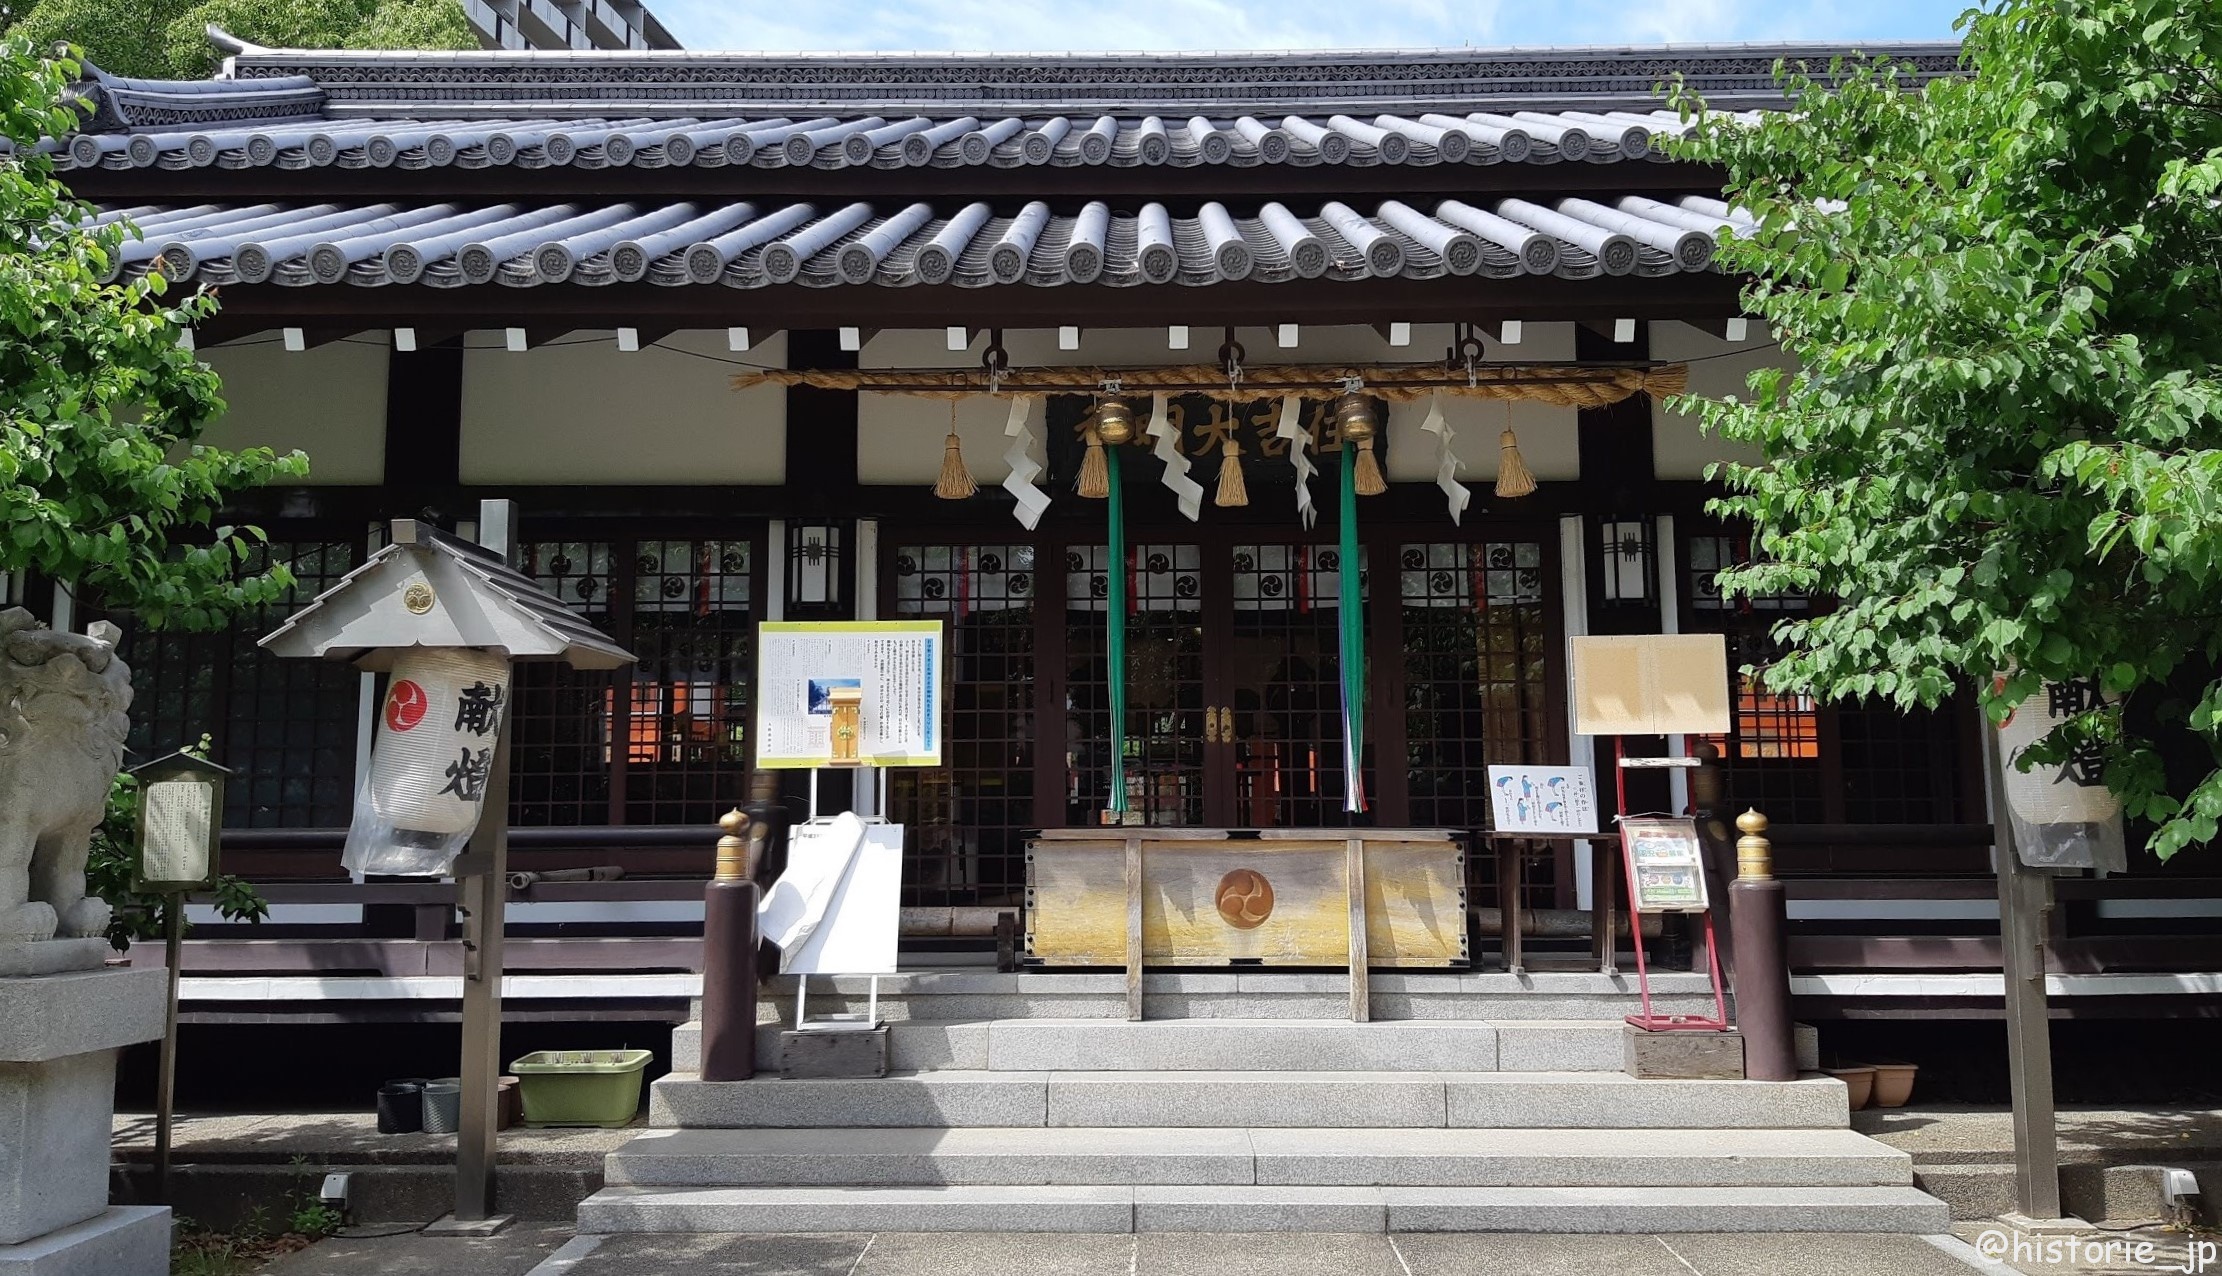 田蓑神社（たみのじんじゃ）の「狛犬」さまは、ひそかな人気のスポット